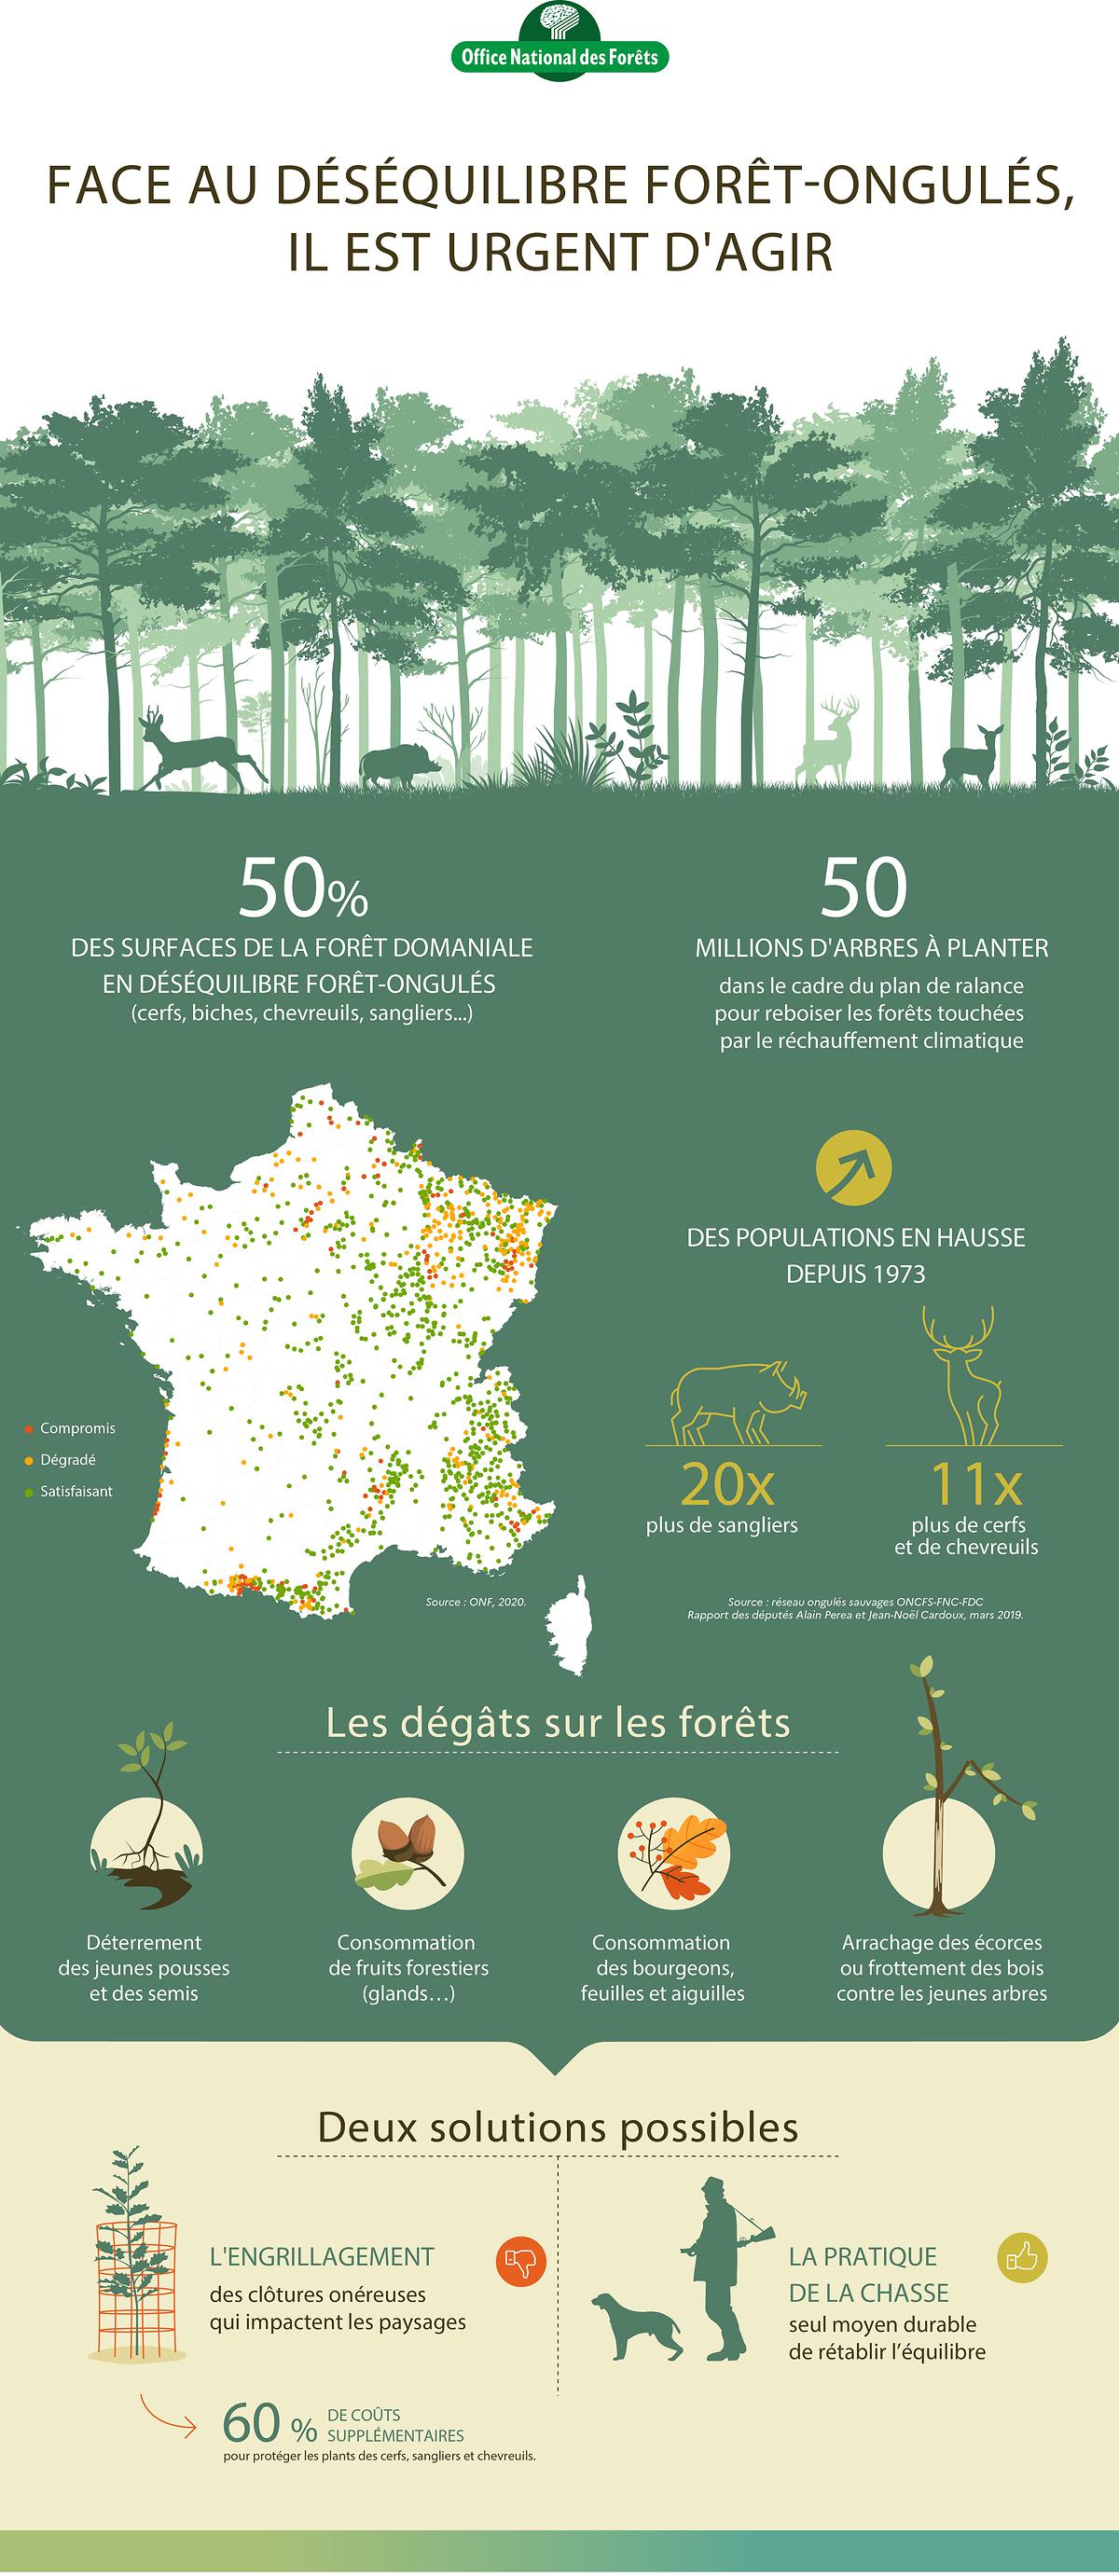 Infographie concernant le déséquilibre forêt-ongulés